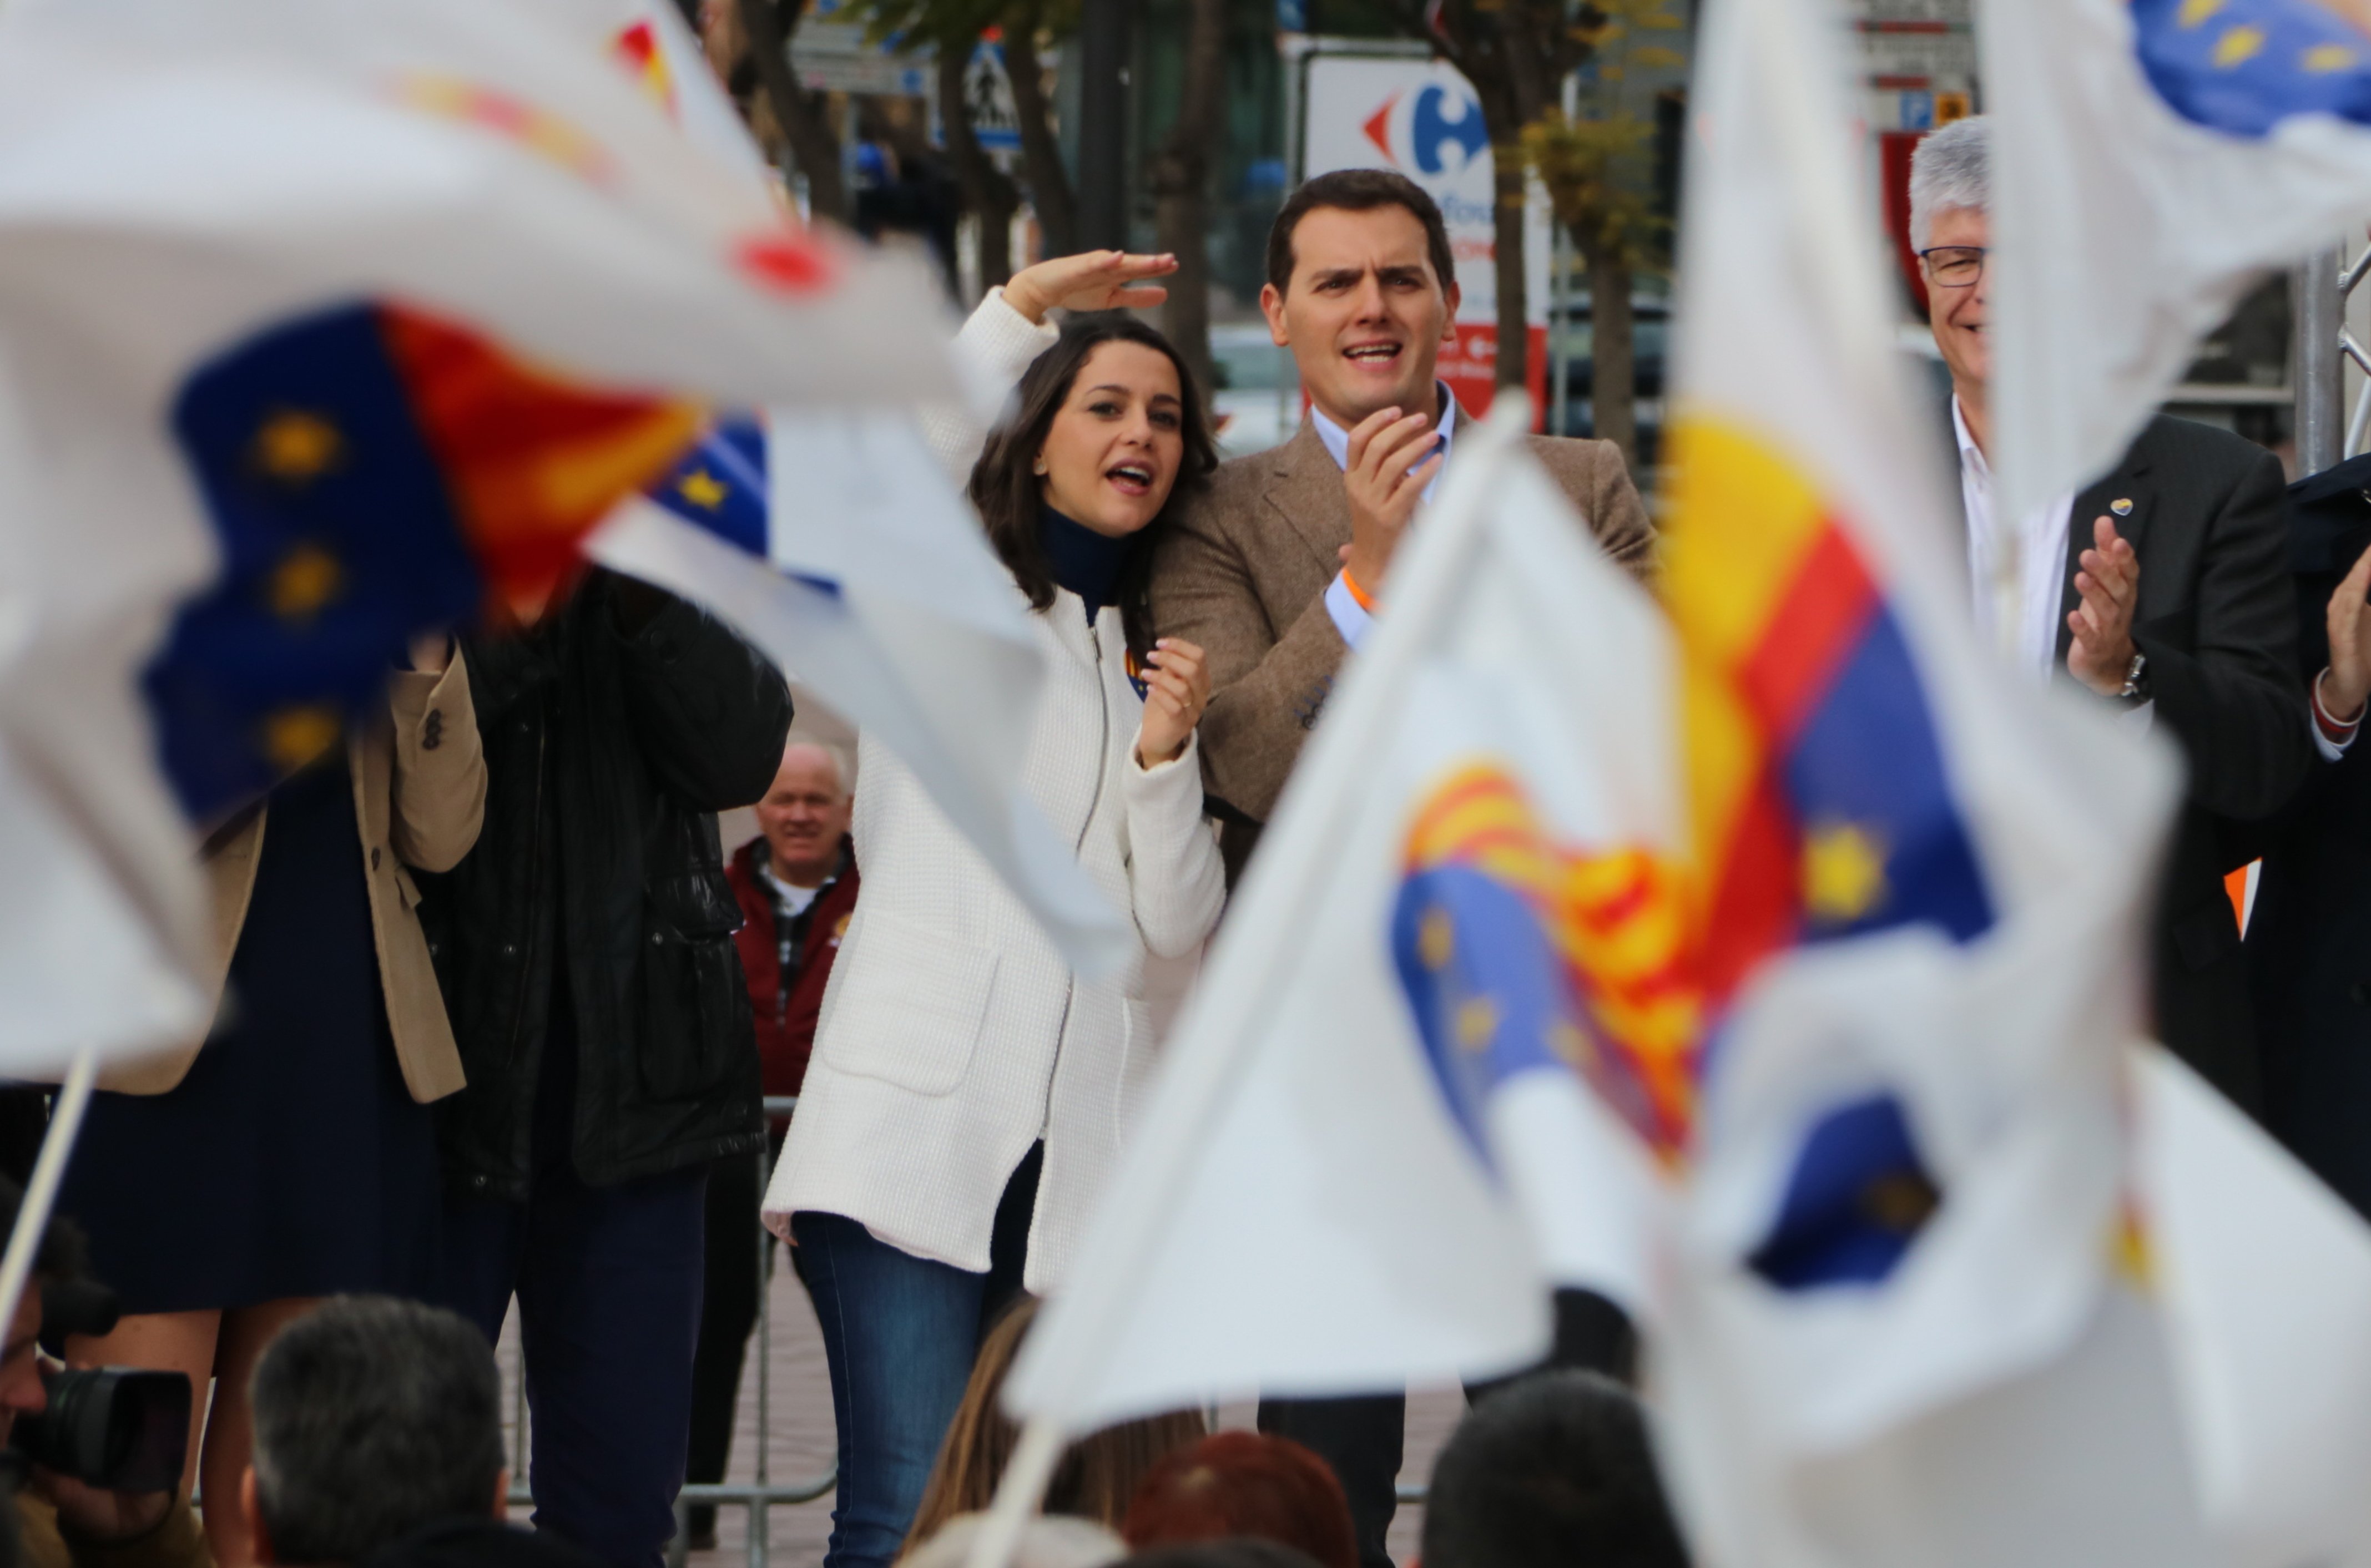 La Junta Electoral permite a Cs exhibir banderas de España en Santa Coloma